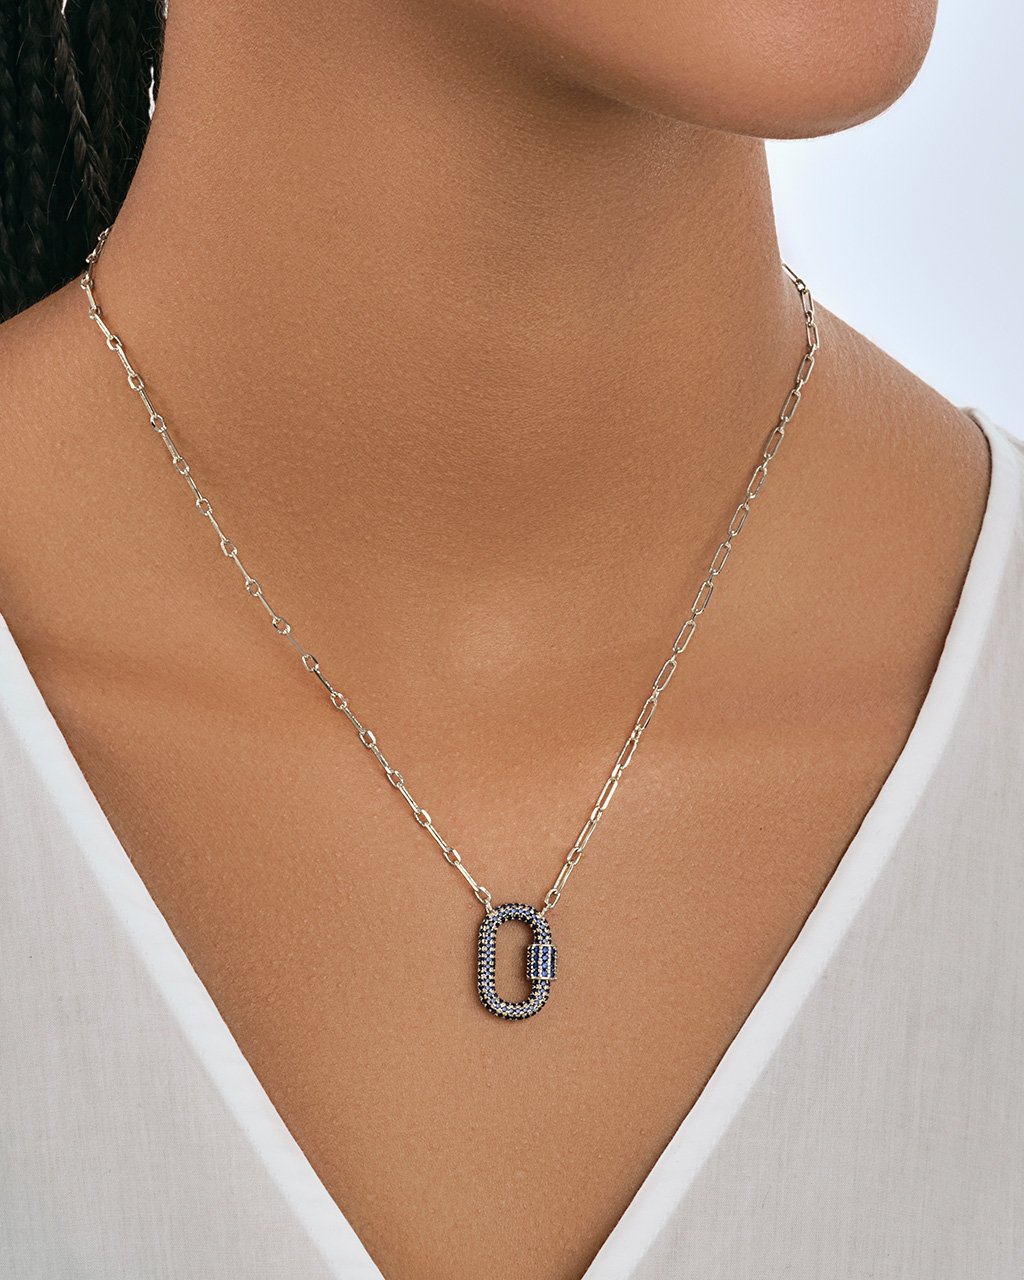 Silver Lock Pendant Chain Necklace